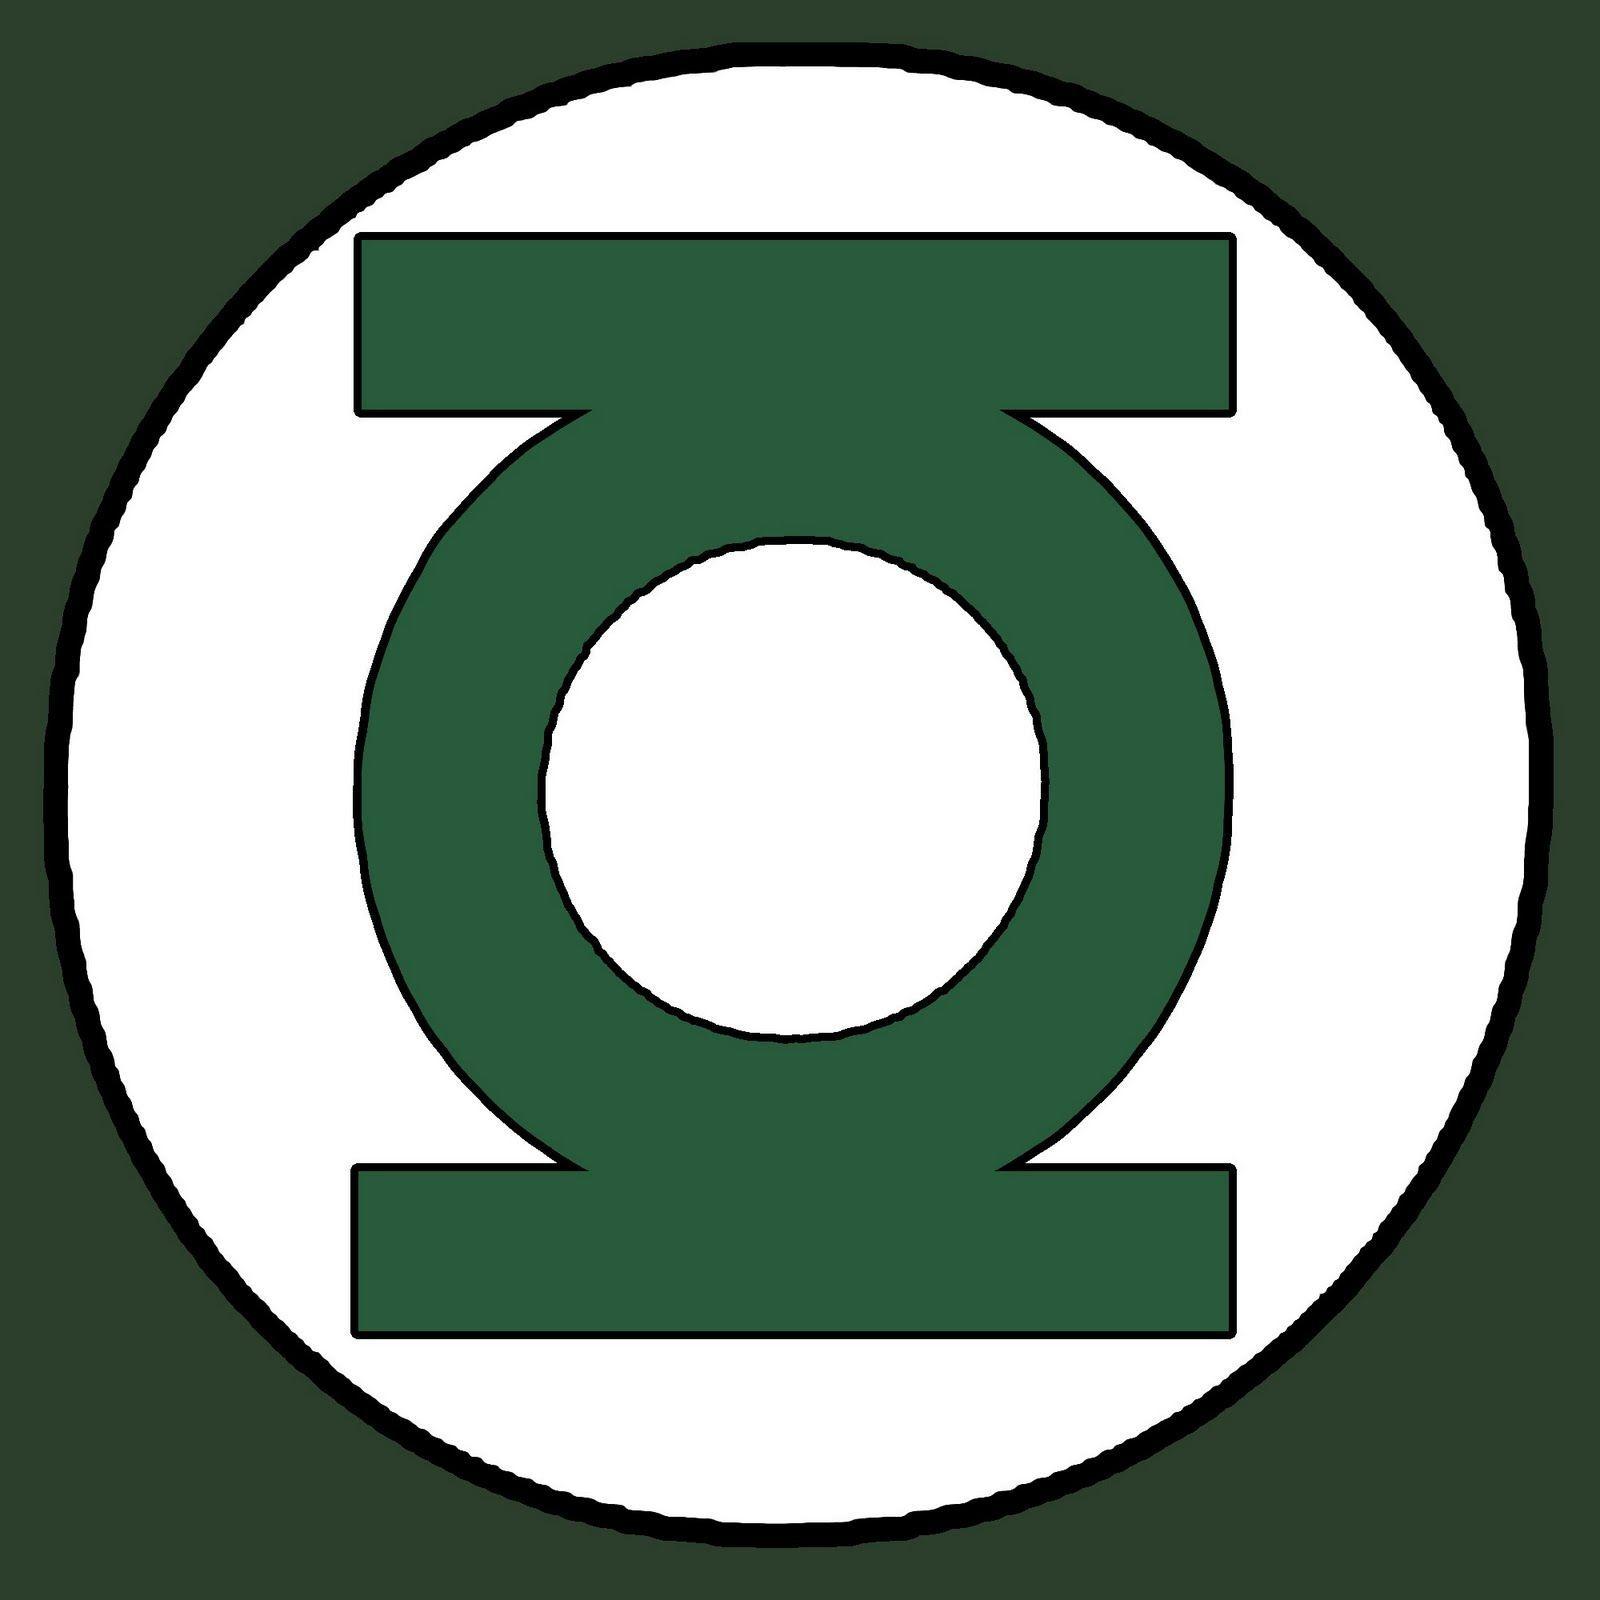 Green Lantern Symbol Logo - Superhero Logo Template | Green Lantern Emblem - White/Green beads ...